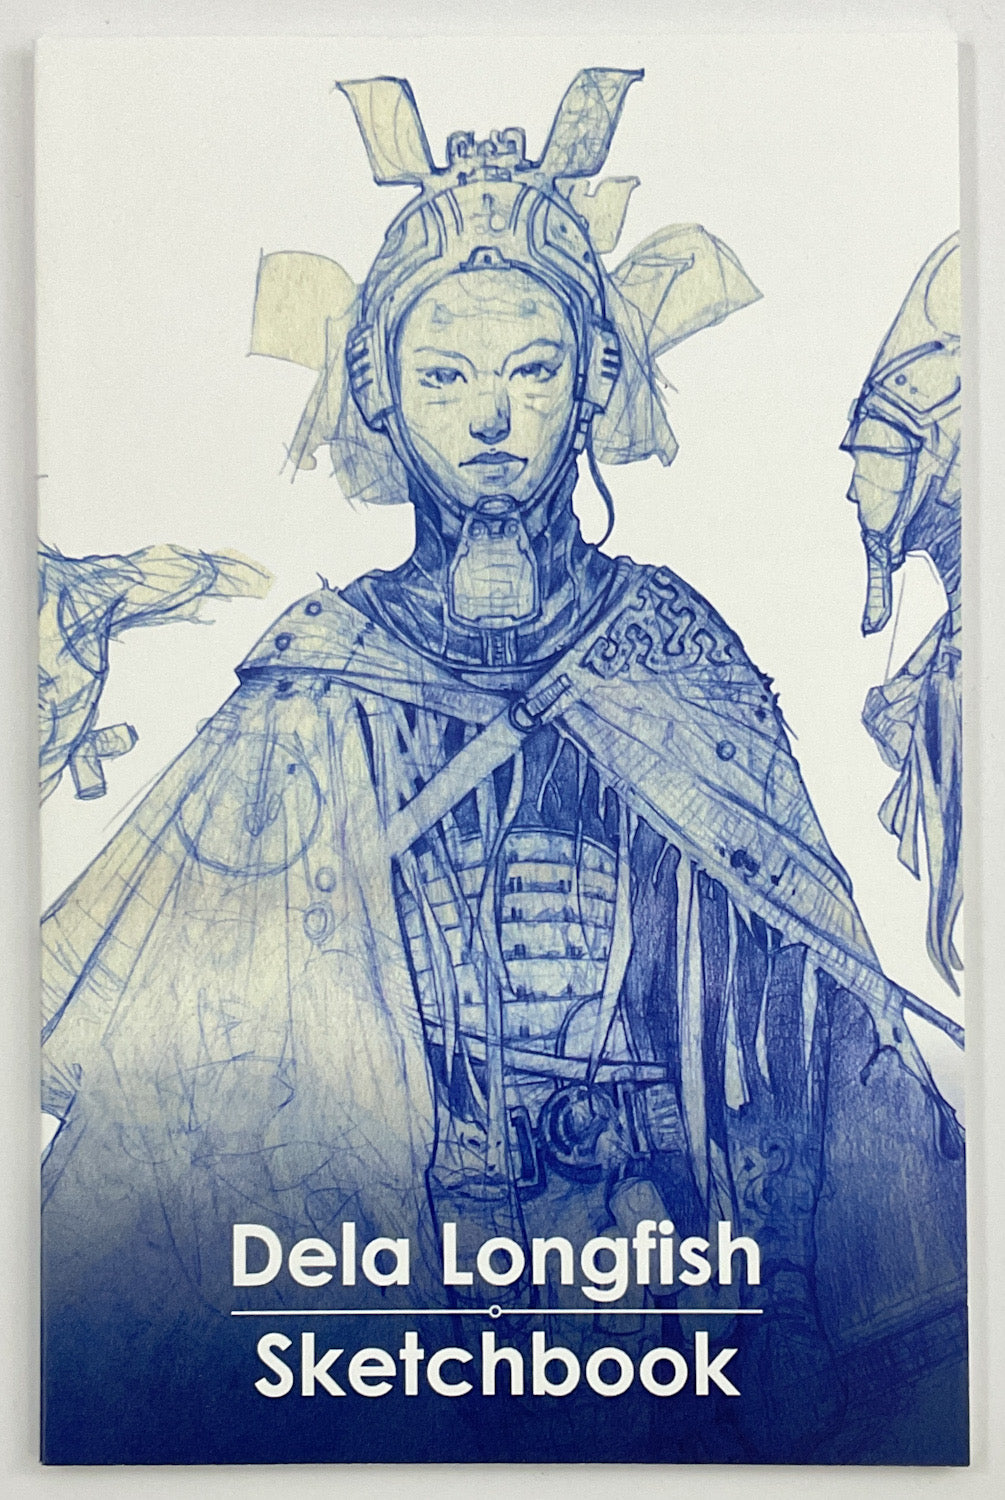 Dela Longfish Sketchbook - Signed